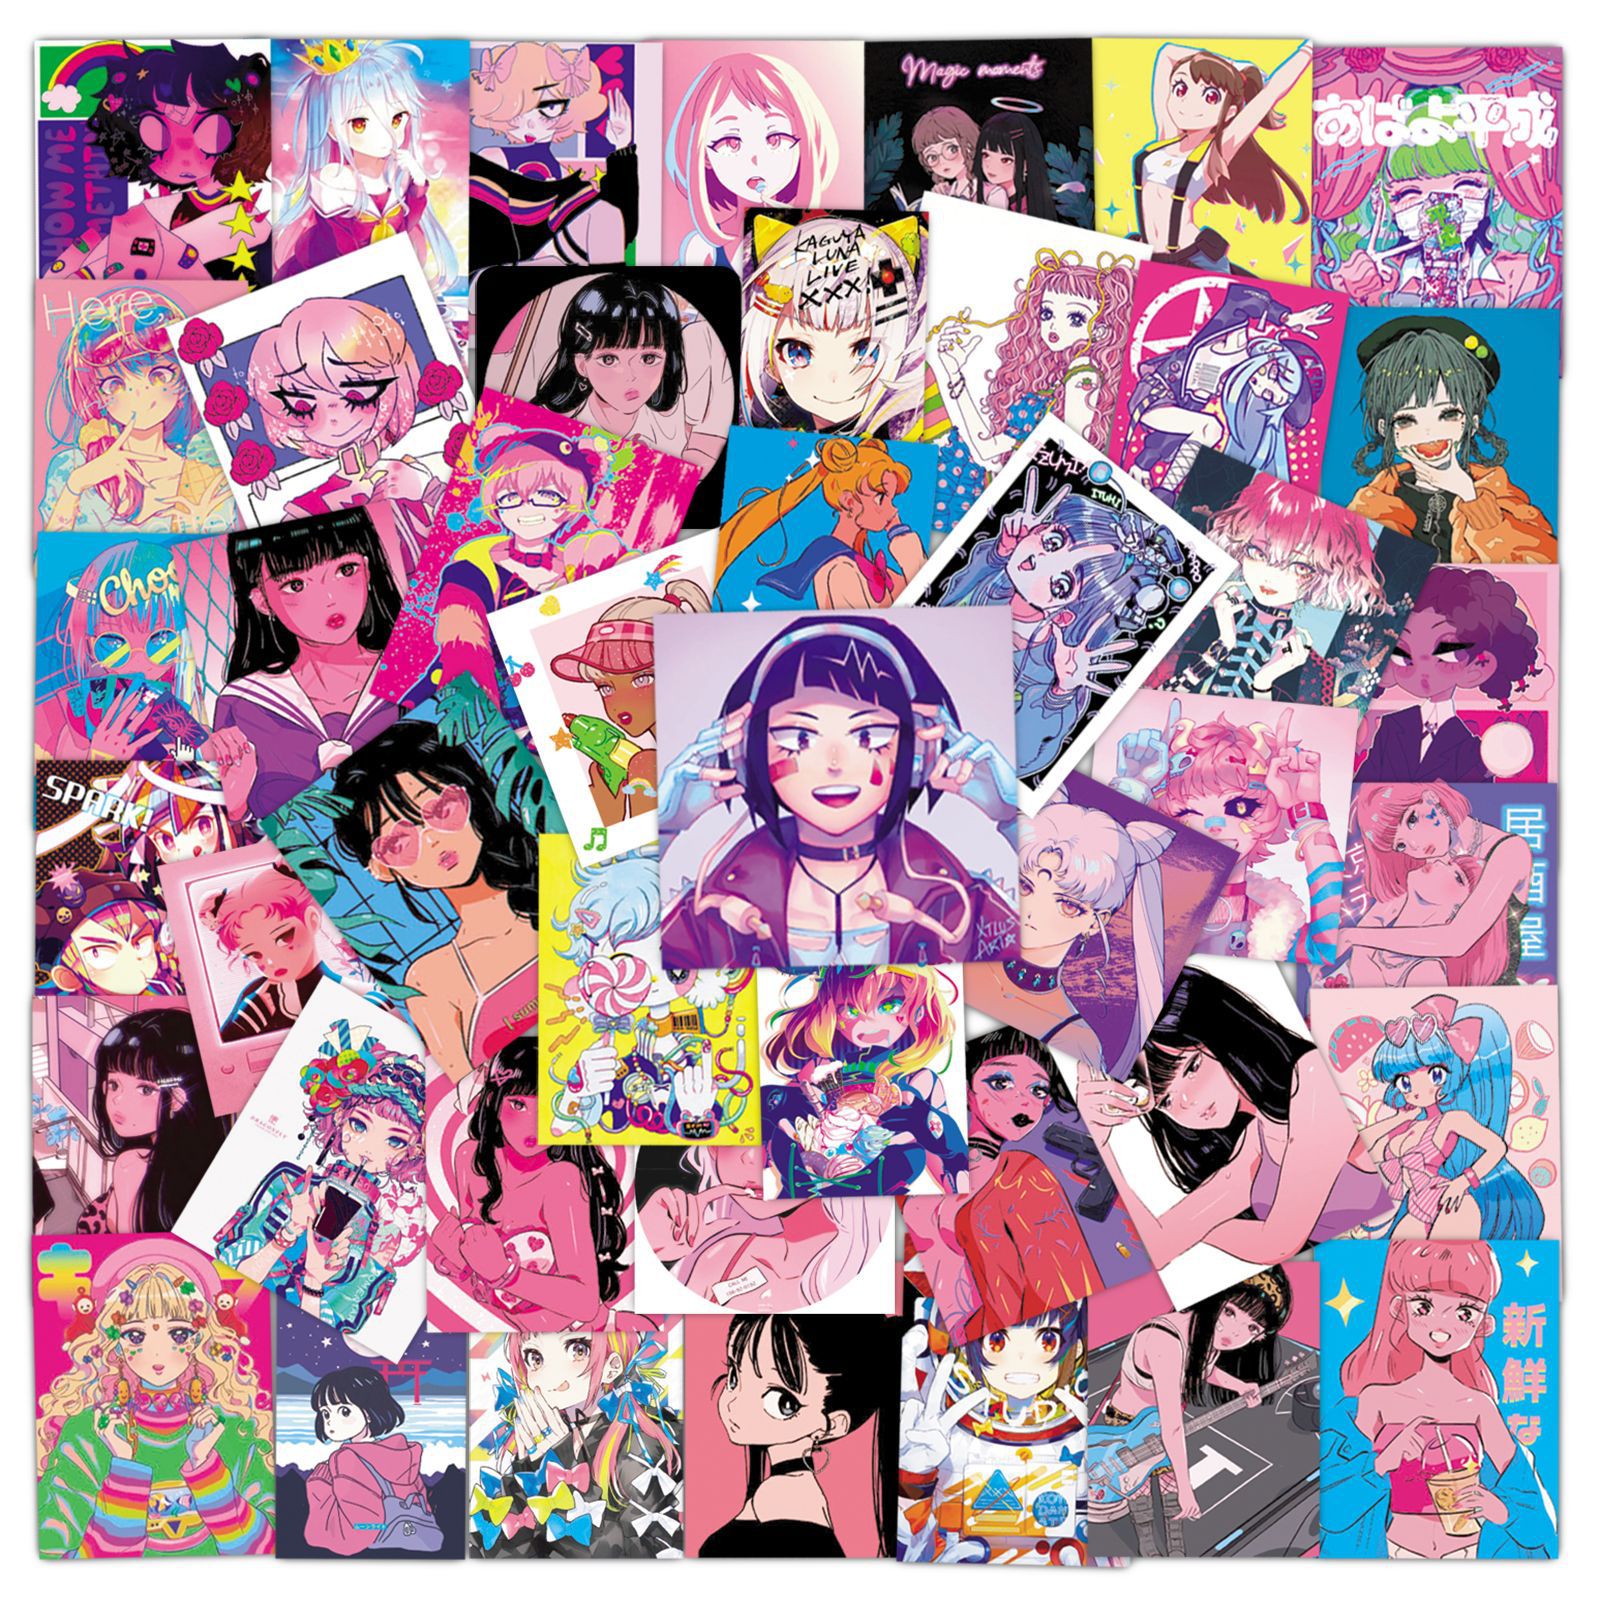 50张日式动漫美少女插画涂鸦贴纸行李箱电脑笔记本手机壳ipad贴图